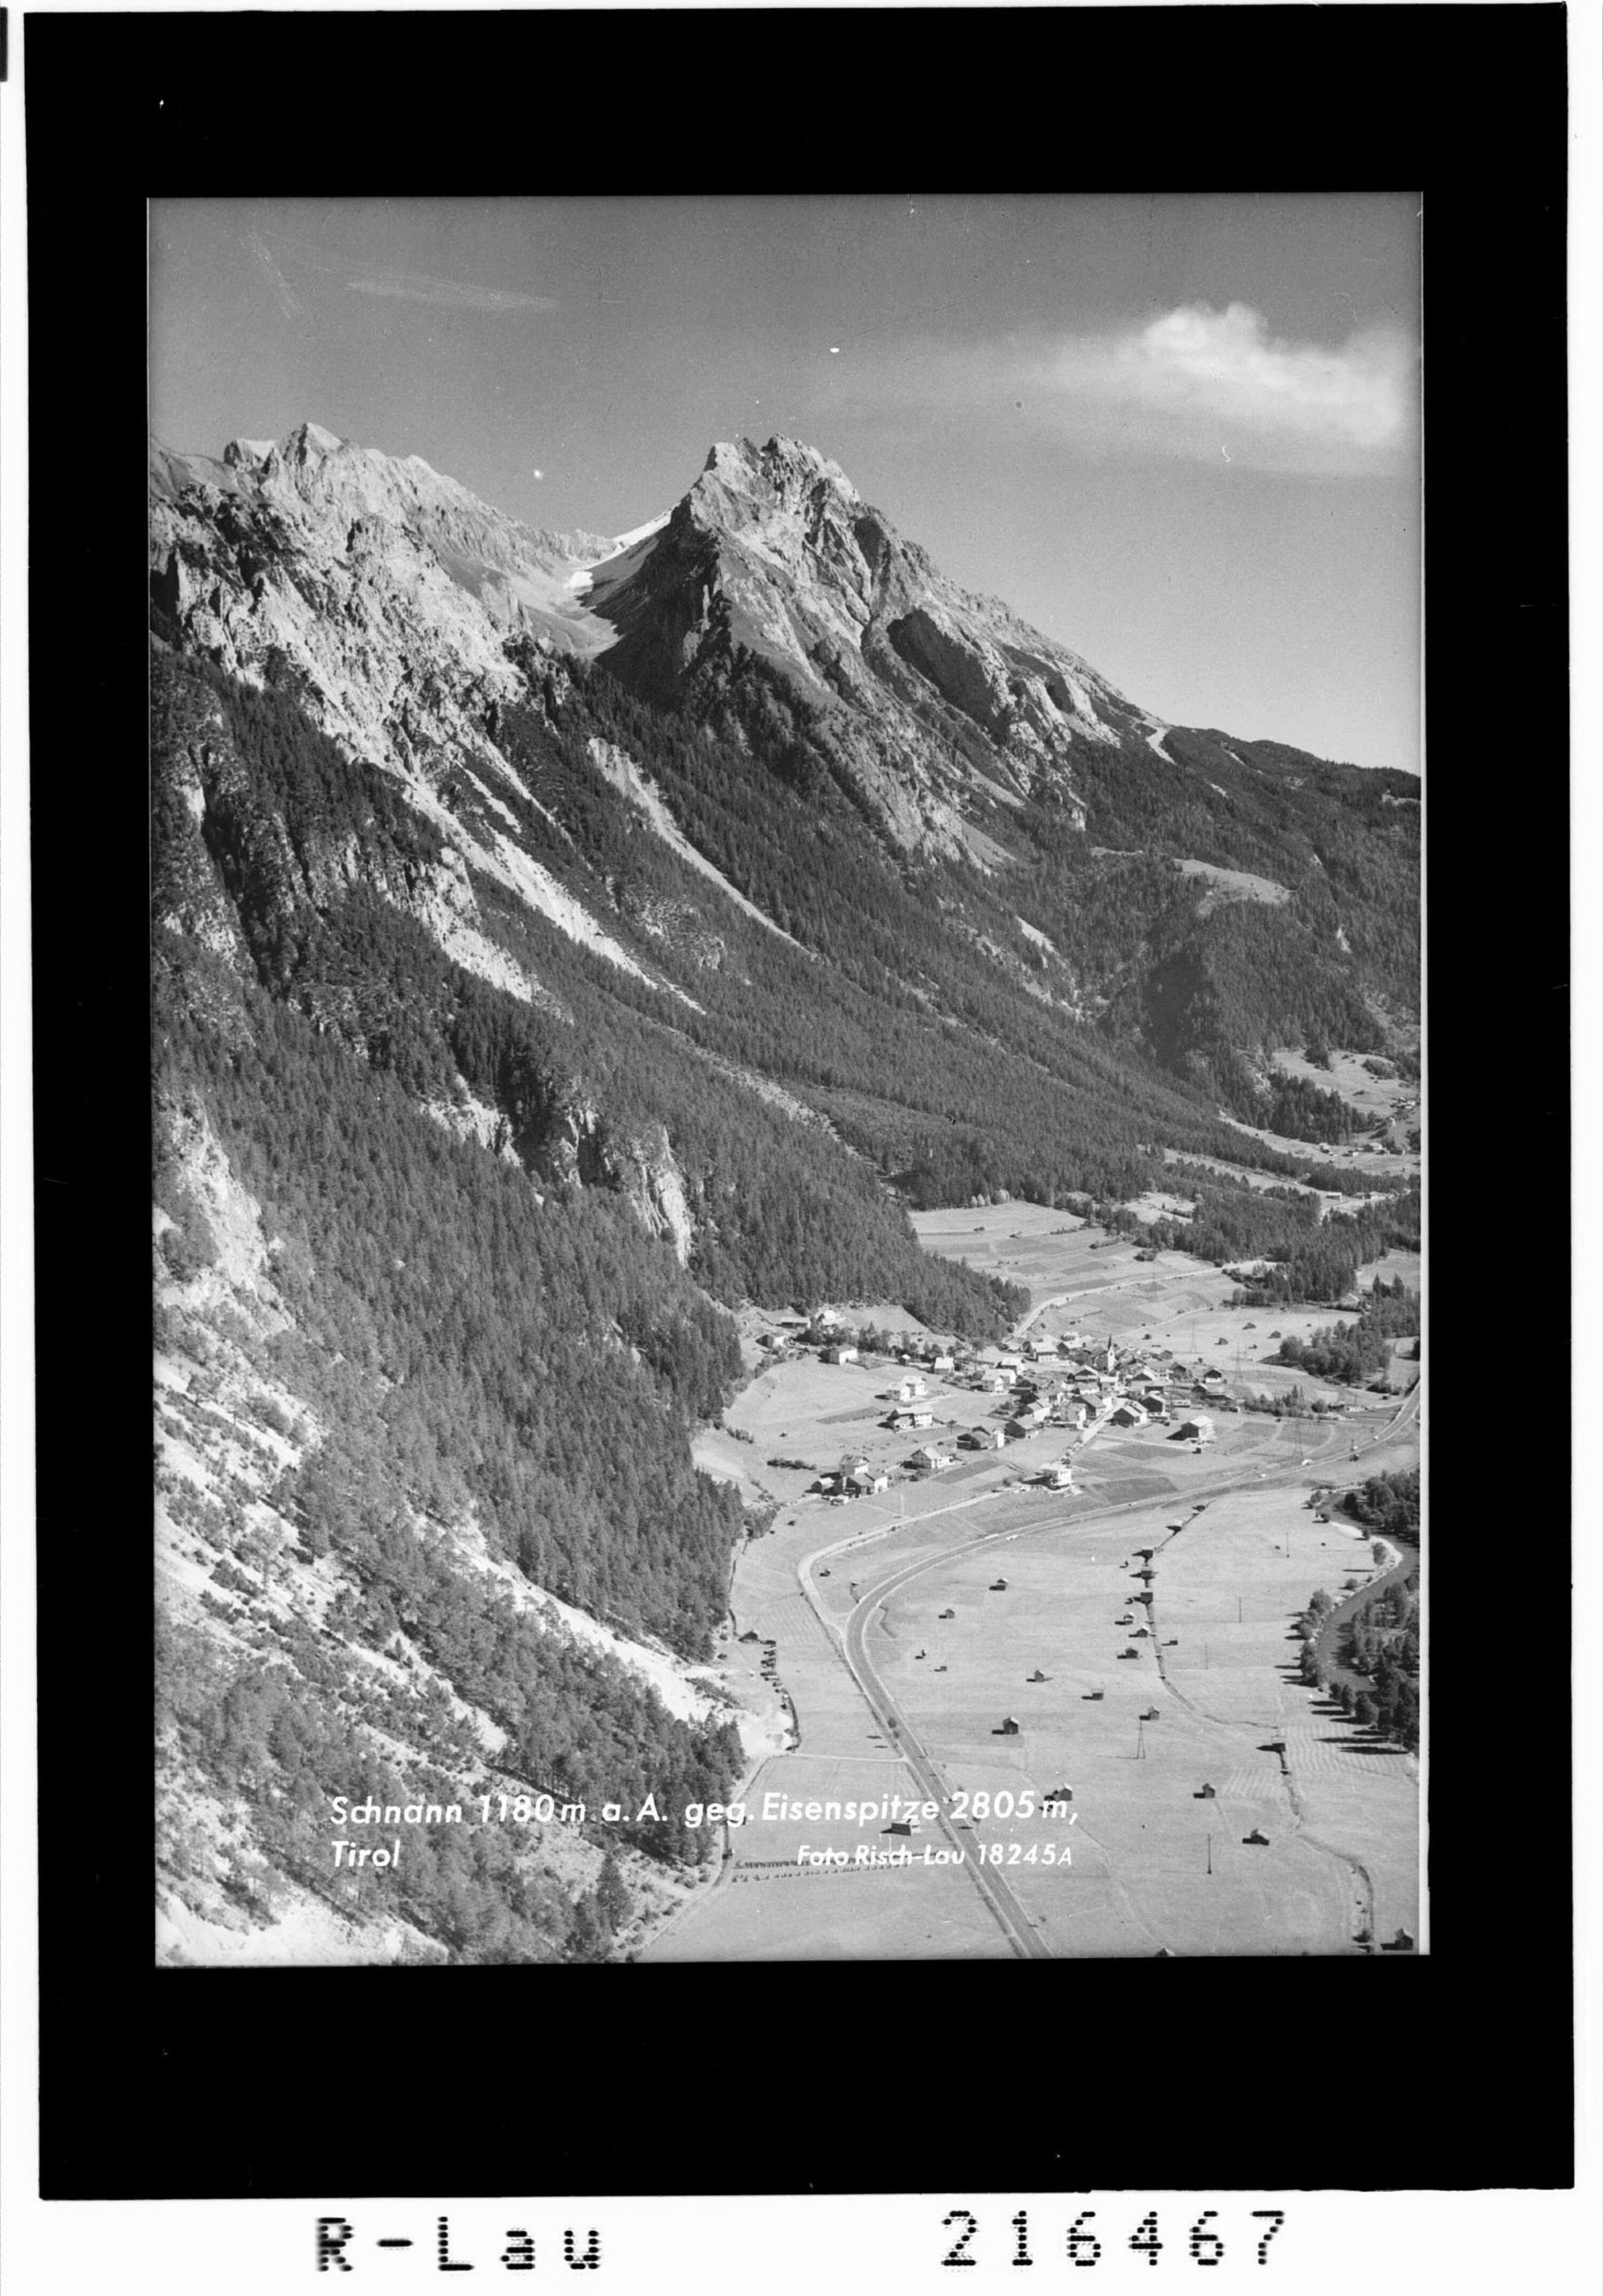 Schnann 1180 m gegen Eisenspitze 2805 m, Tirol></div>


    <hr>
    <div class=